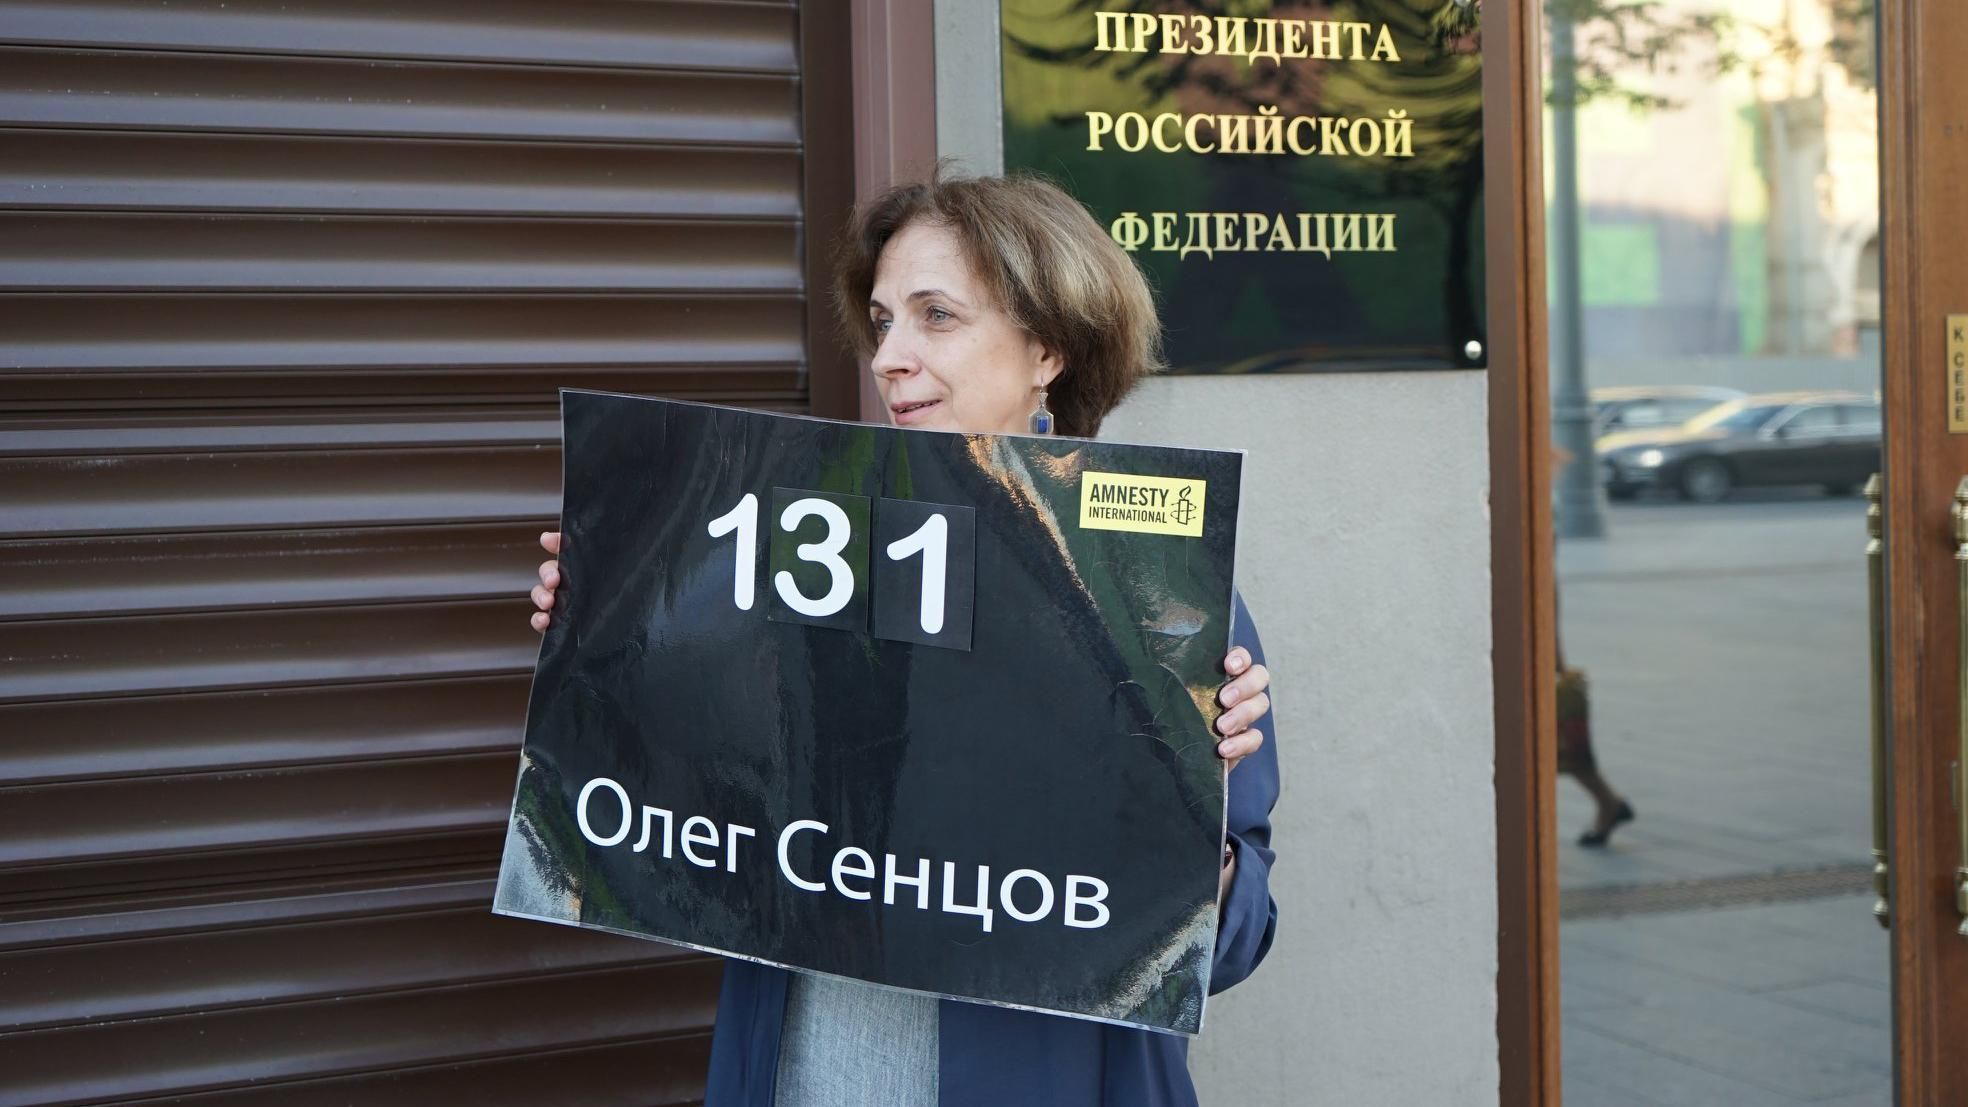 Під адміністрацією Путіна російська активістка провела одиночний пікет на підтримку Сенцова